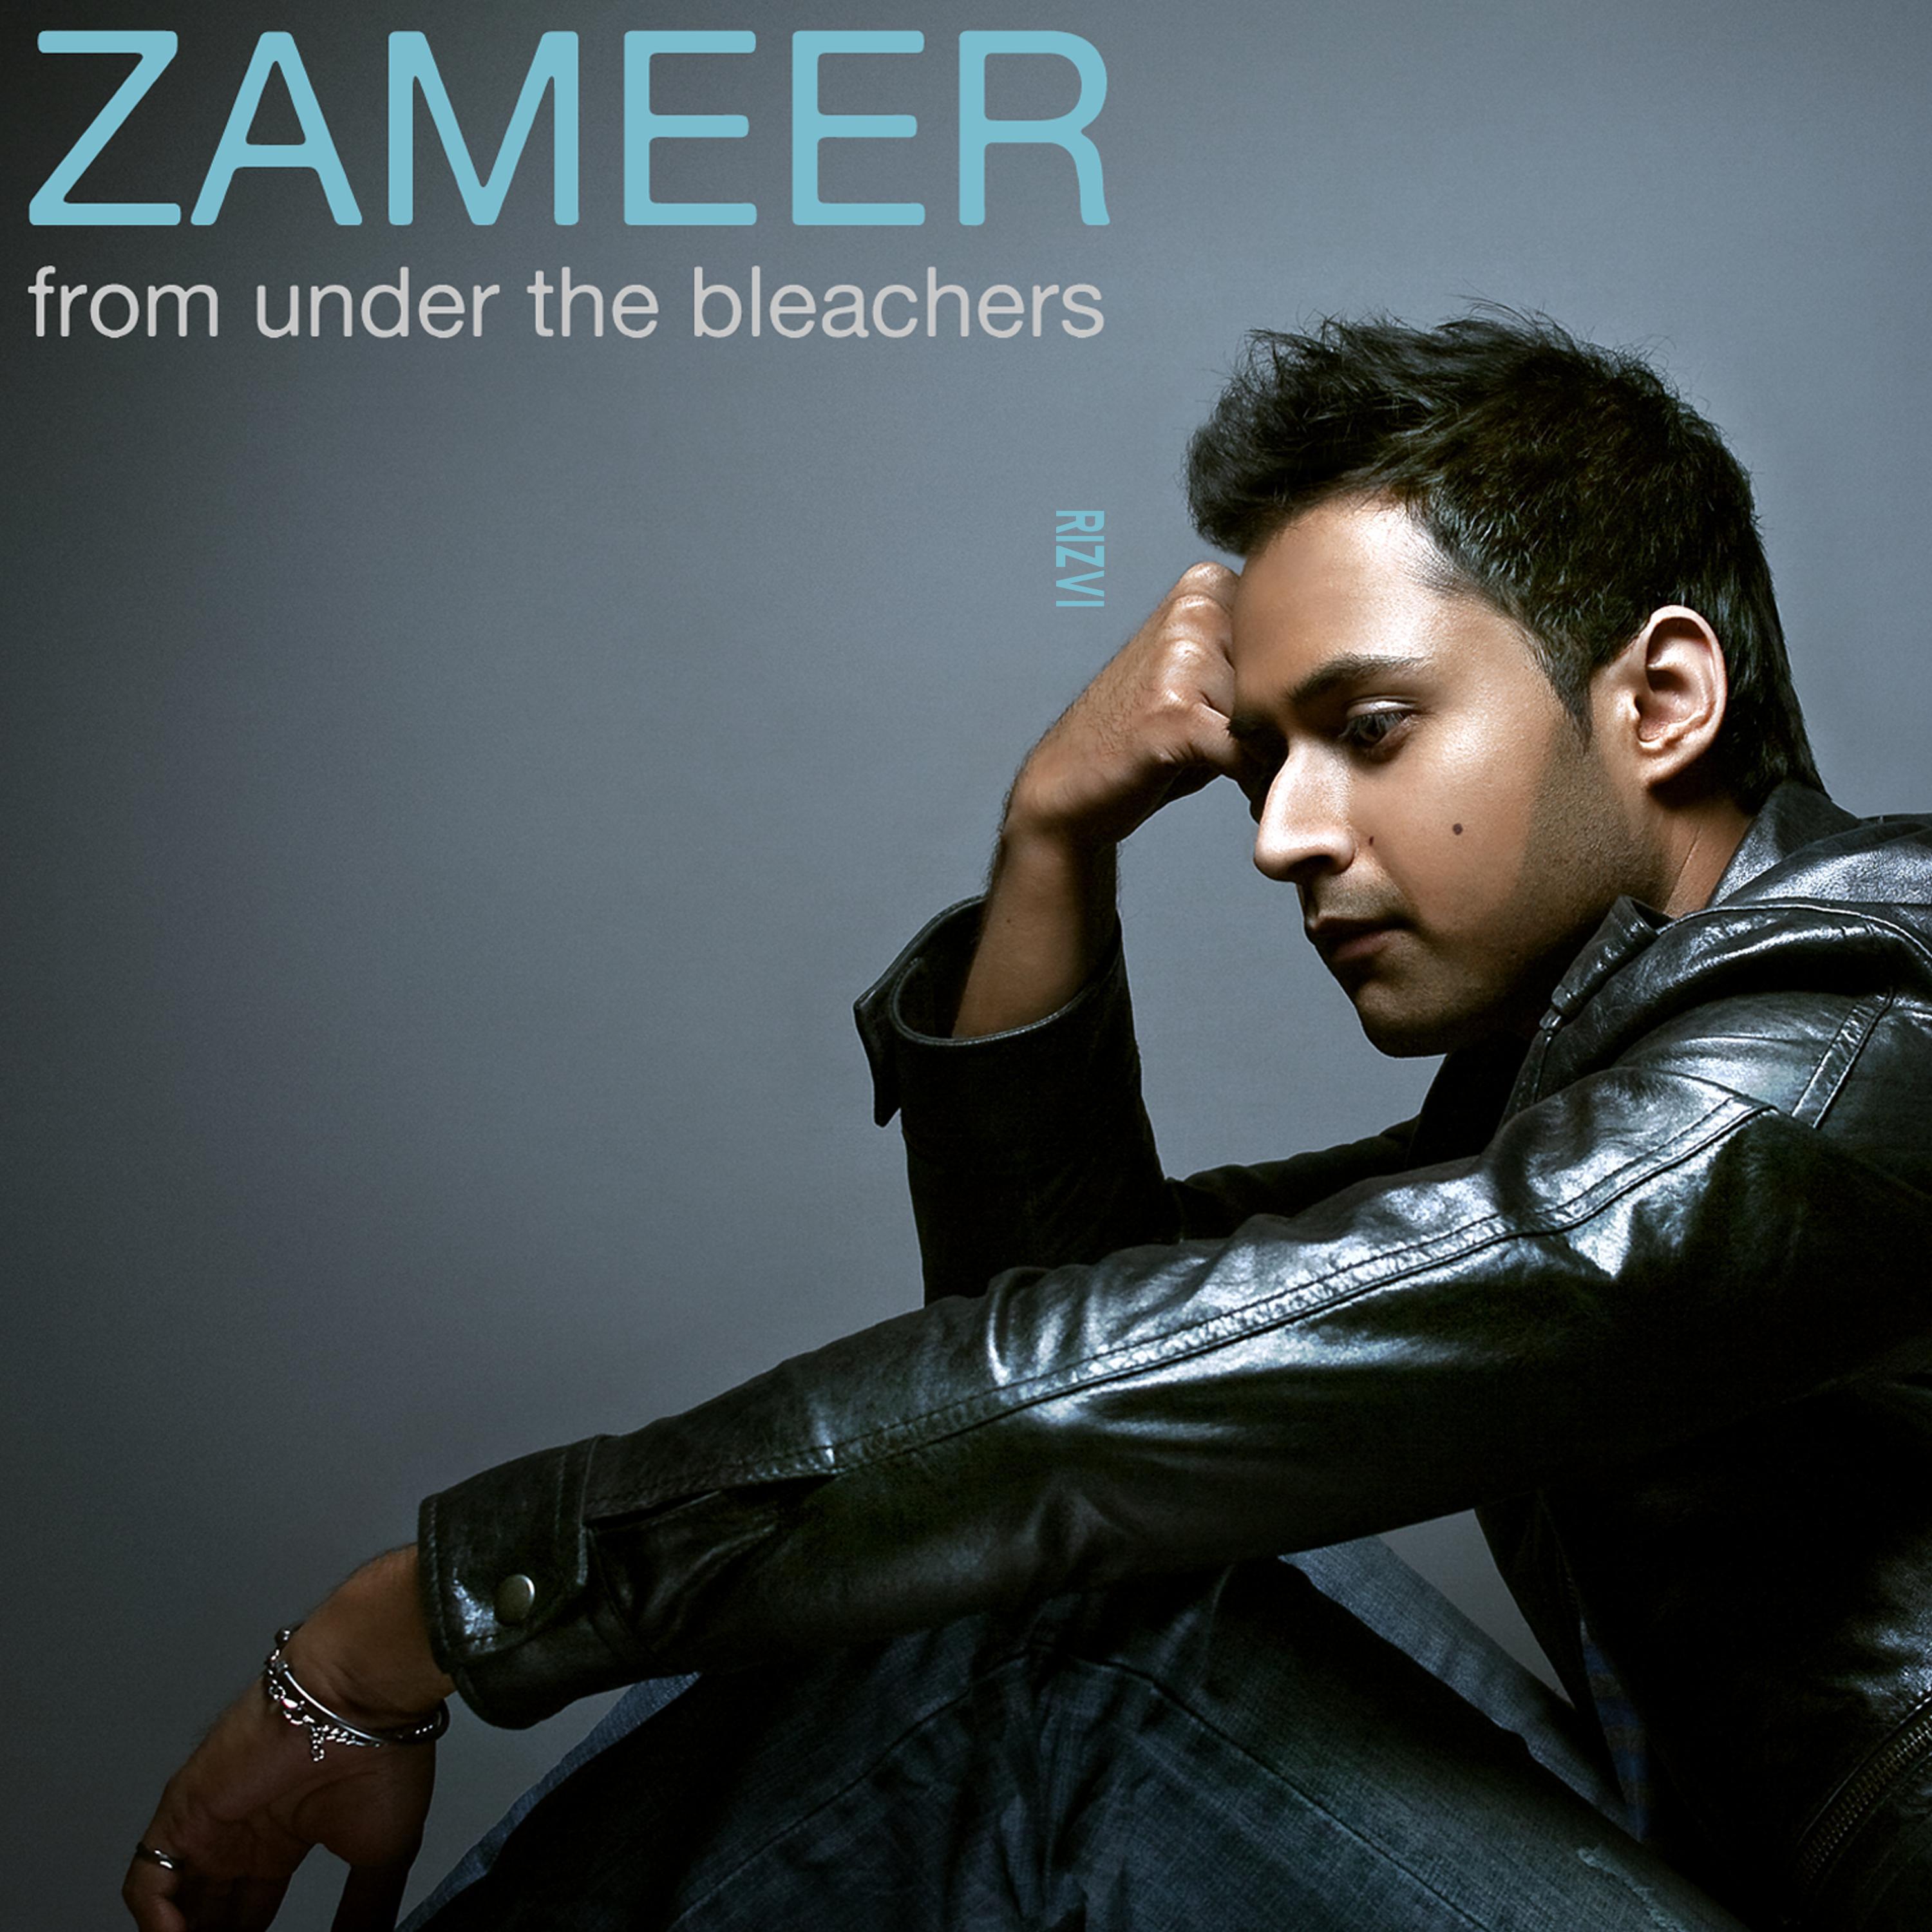 Zameer Rizvi - Where the Sun Don't Shine